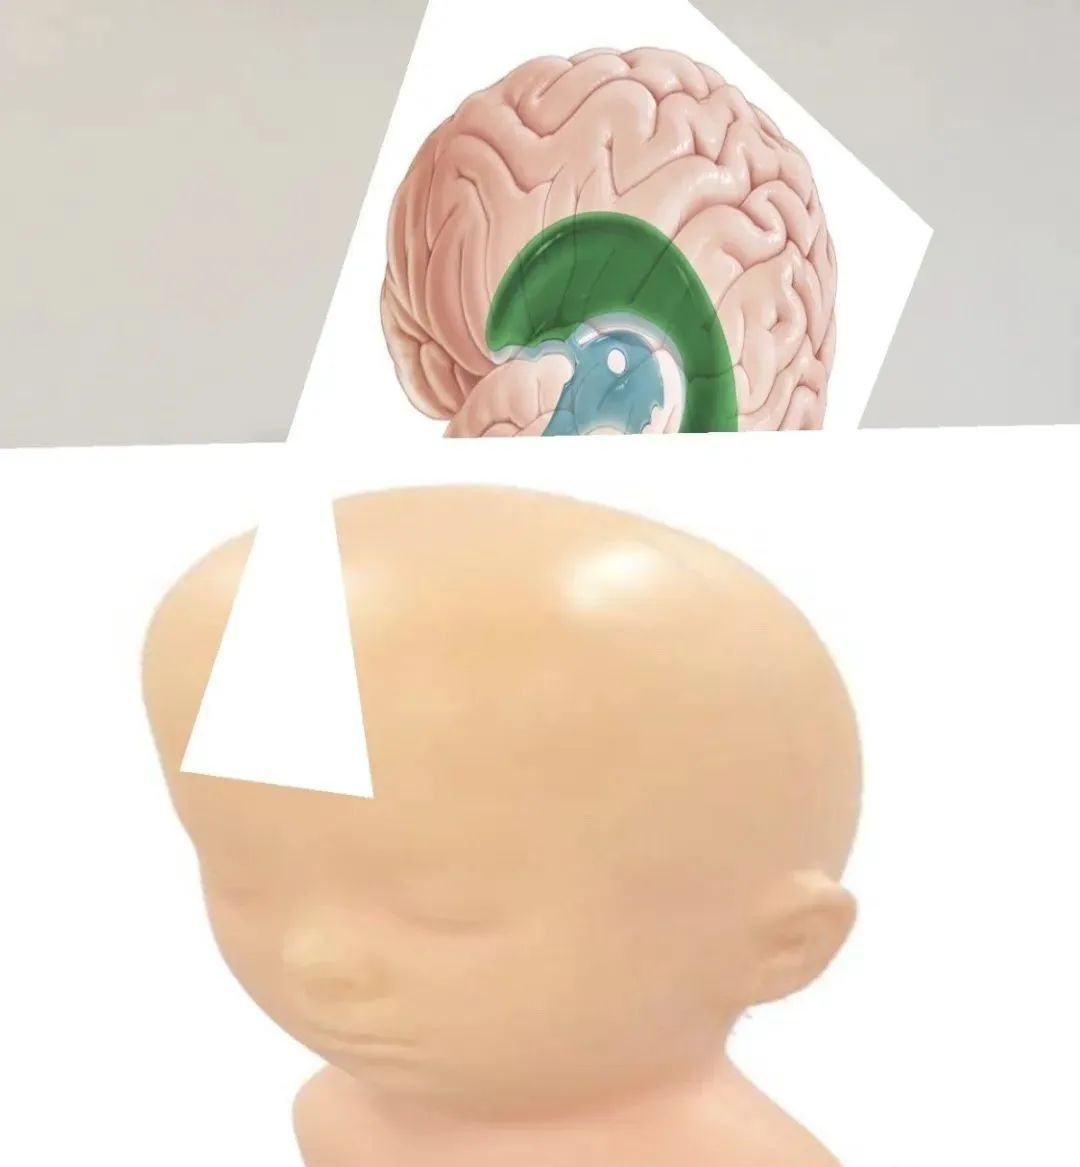 侧脑室的几张精彩解剖图